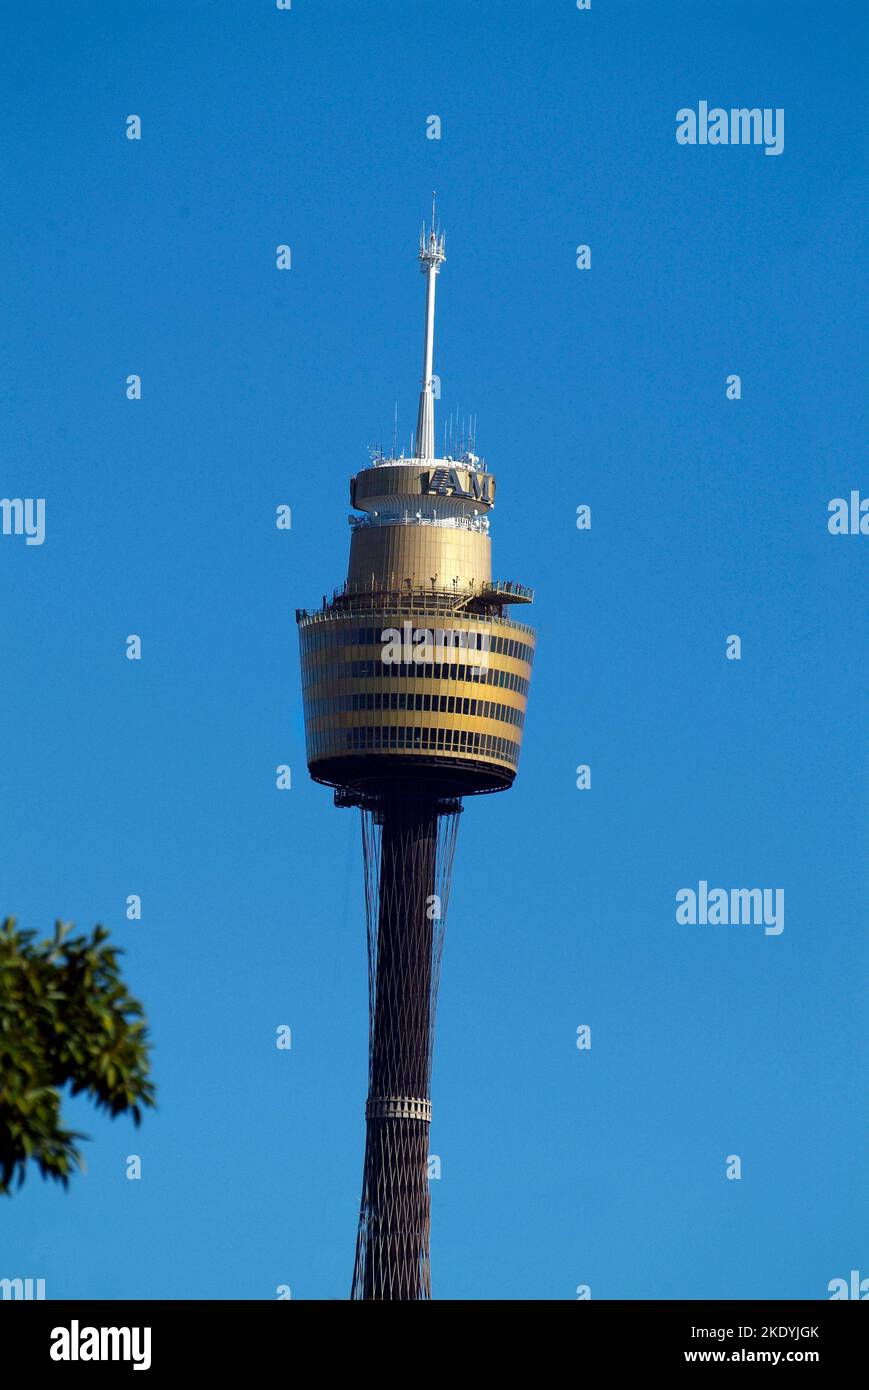 Sydney, Australia - 07 de mayo de 2010: La Sydney Tower, anteriormente AMP Tower y Centrepoint Tower, es una torre de televisión y observación con restaurante y gr Foto de stock